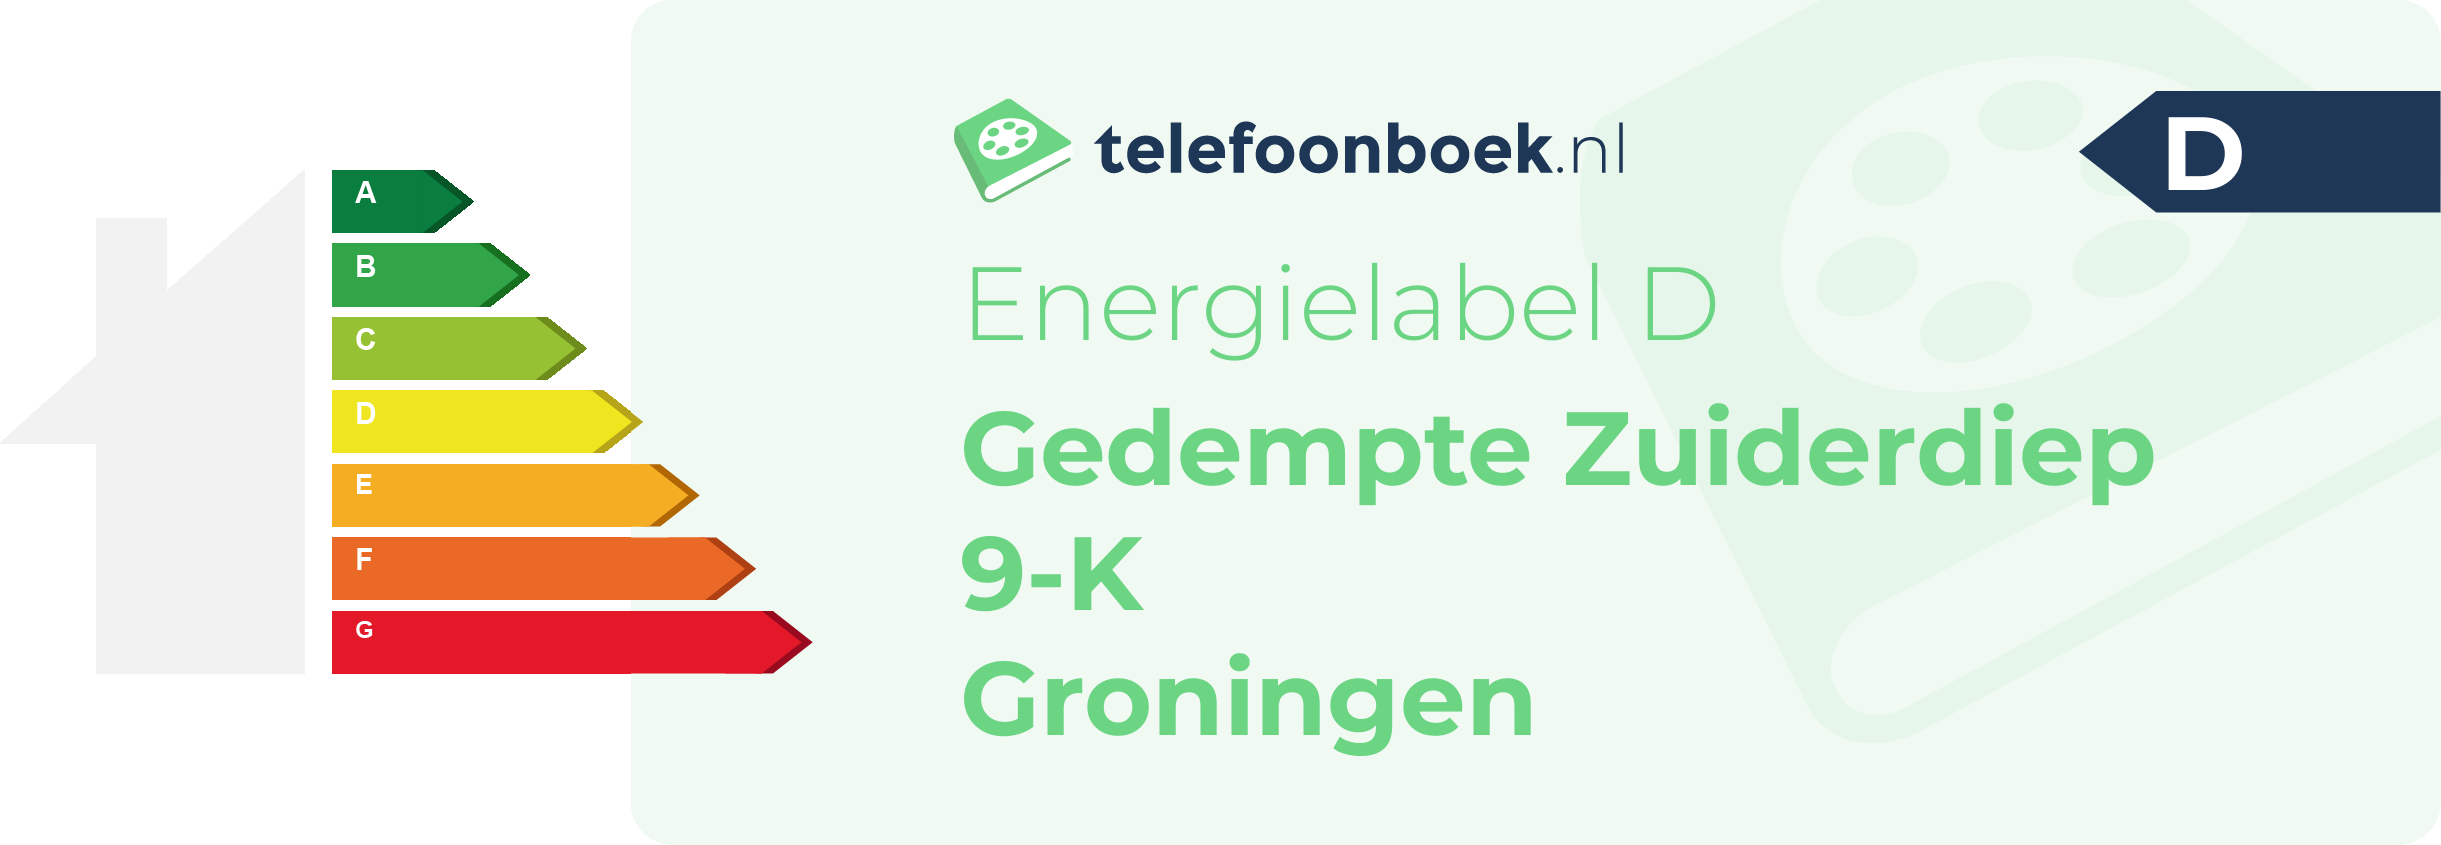 Energielabel Gedempte Zuiderdiep 9-K Groningen